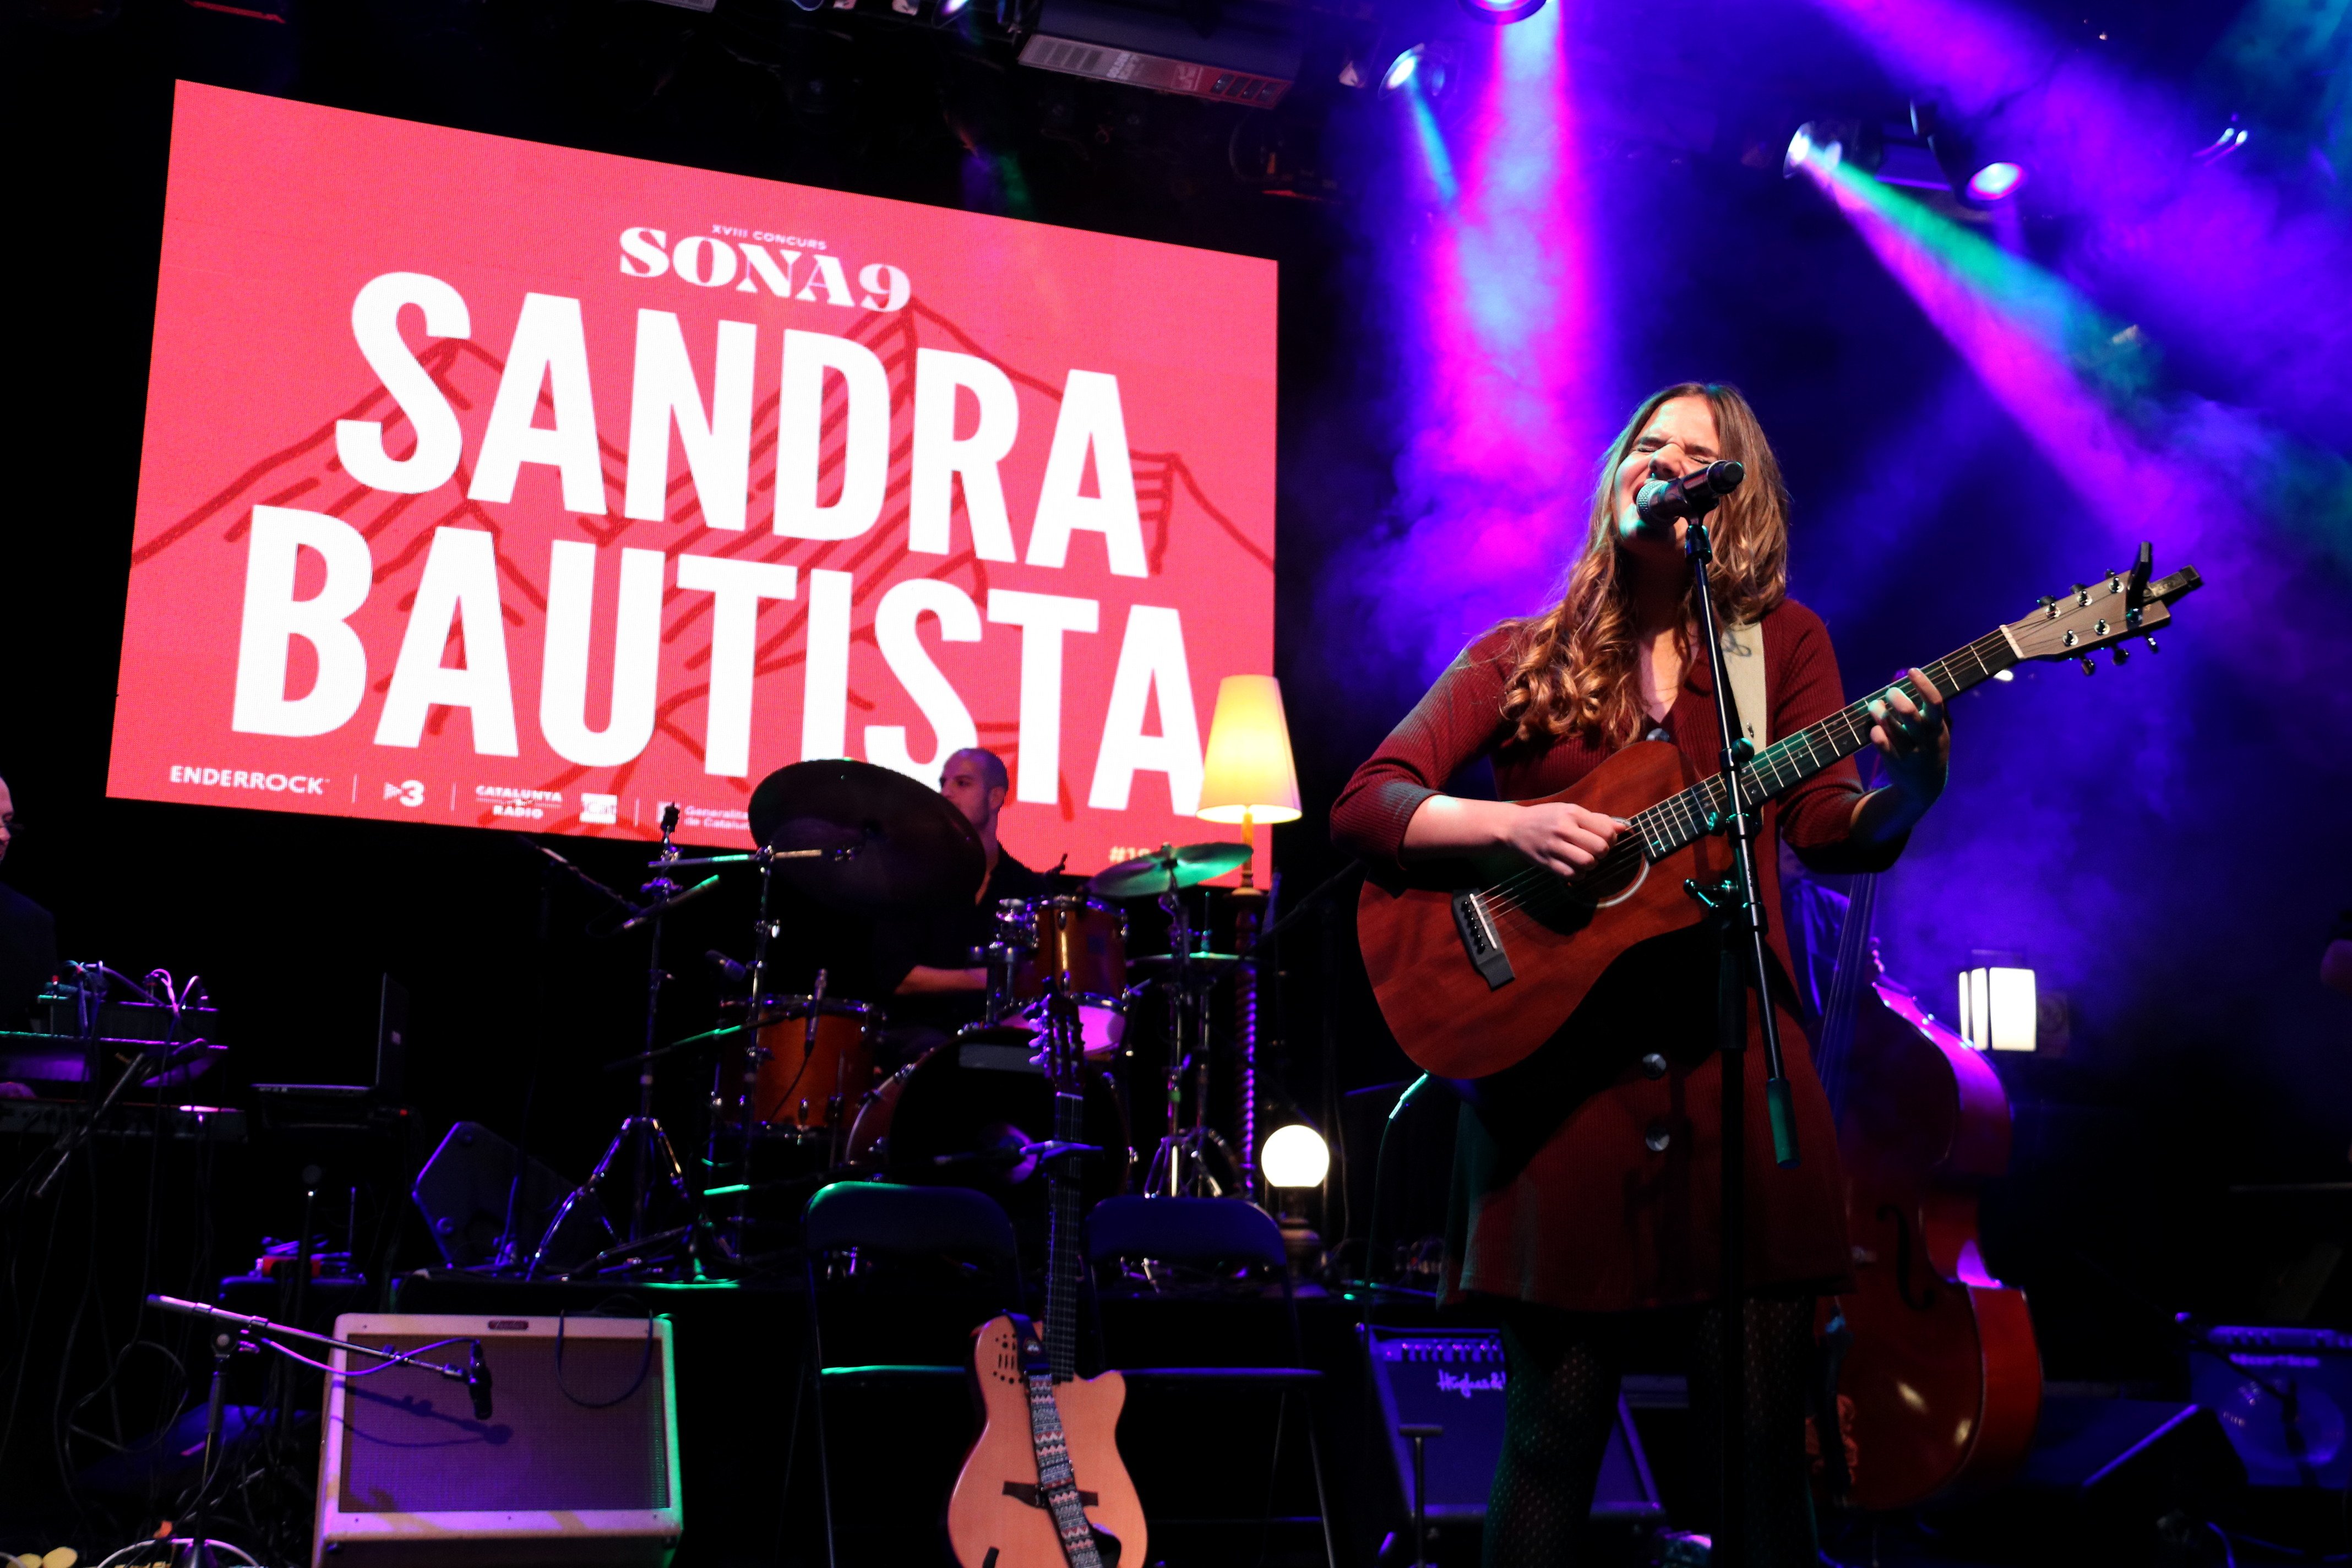 Sandra Bautista gana el premio Sona9 del 2018